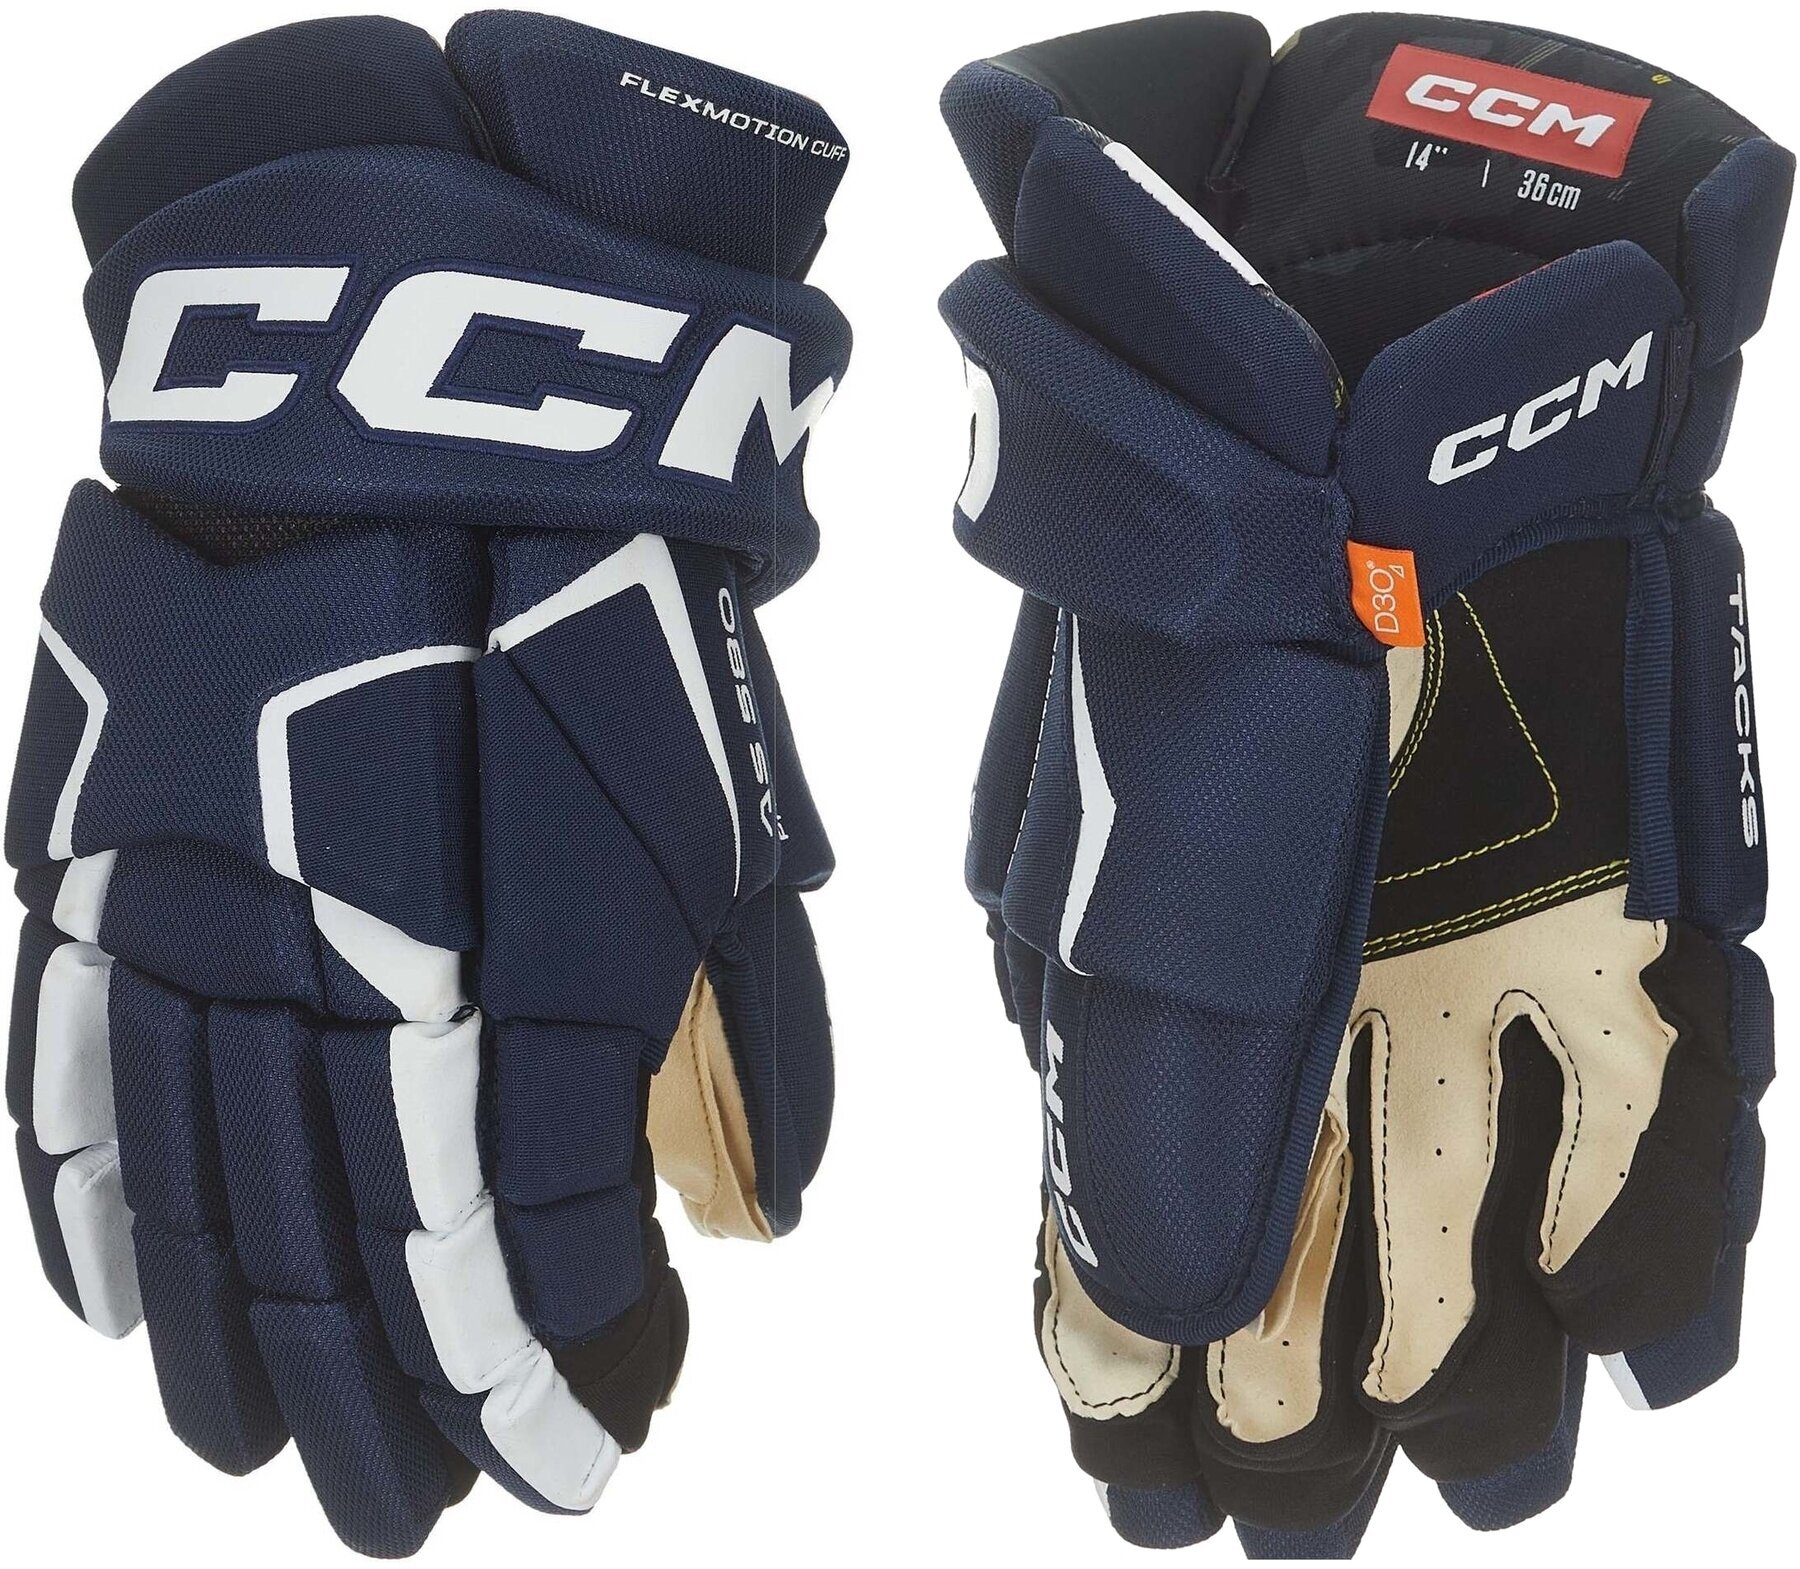 Hokejske rokavice CCM Tacks AS 580 SR 13 Navy/White Hokejske rokavice